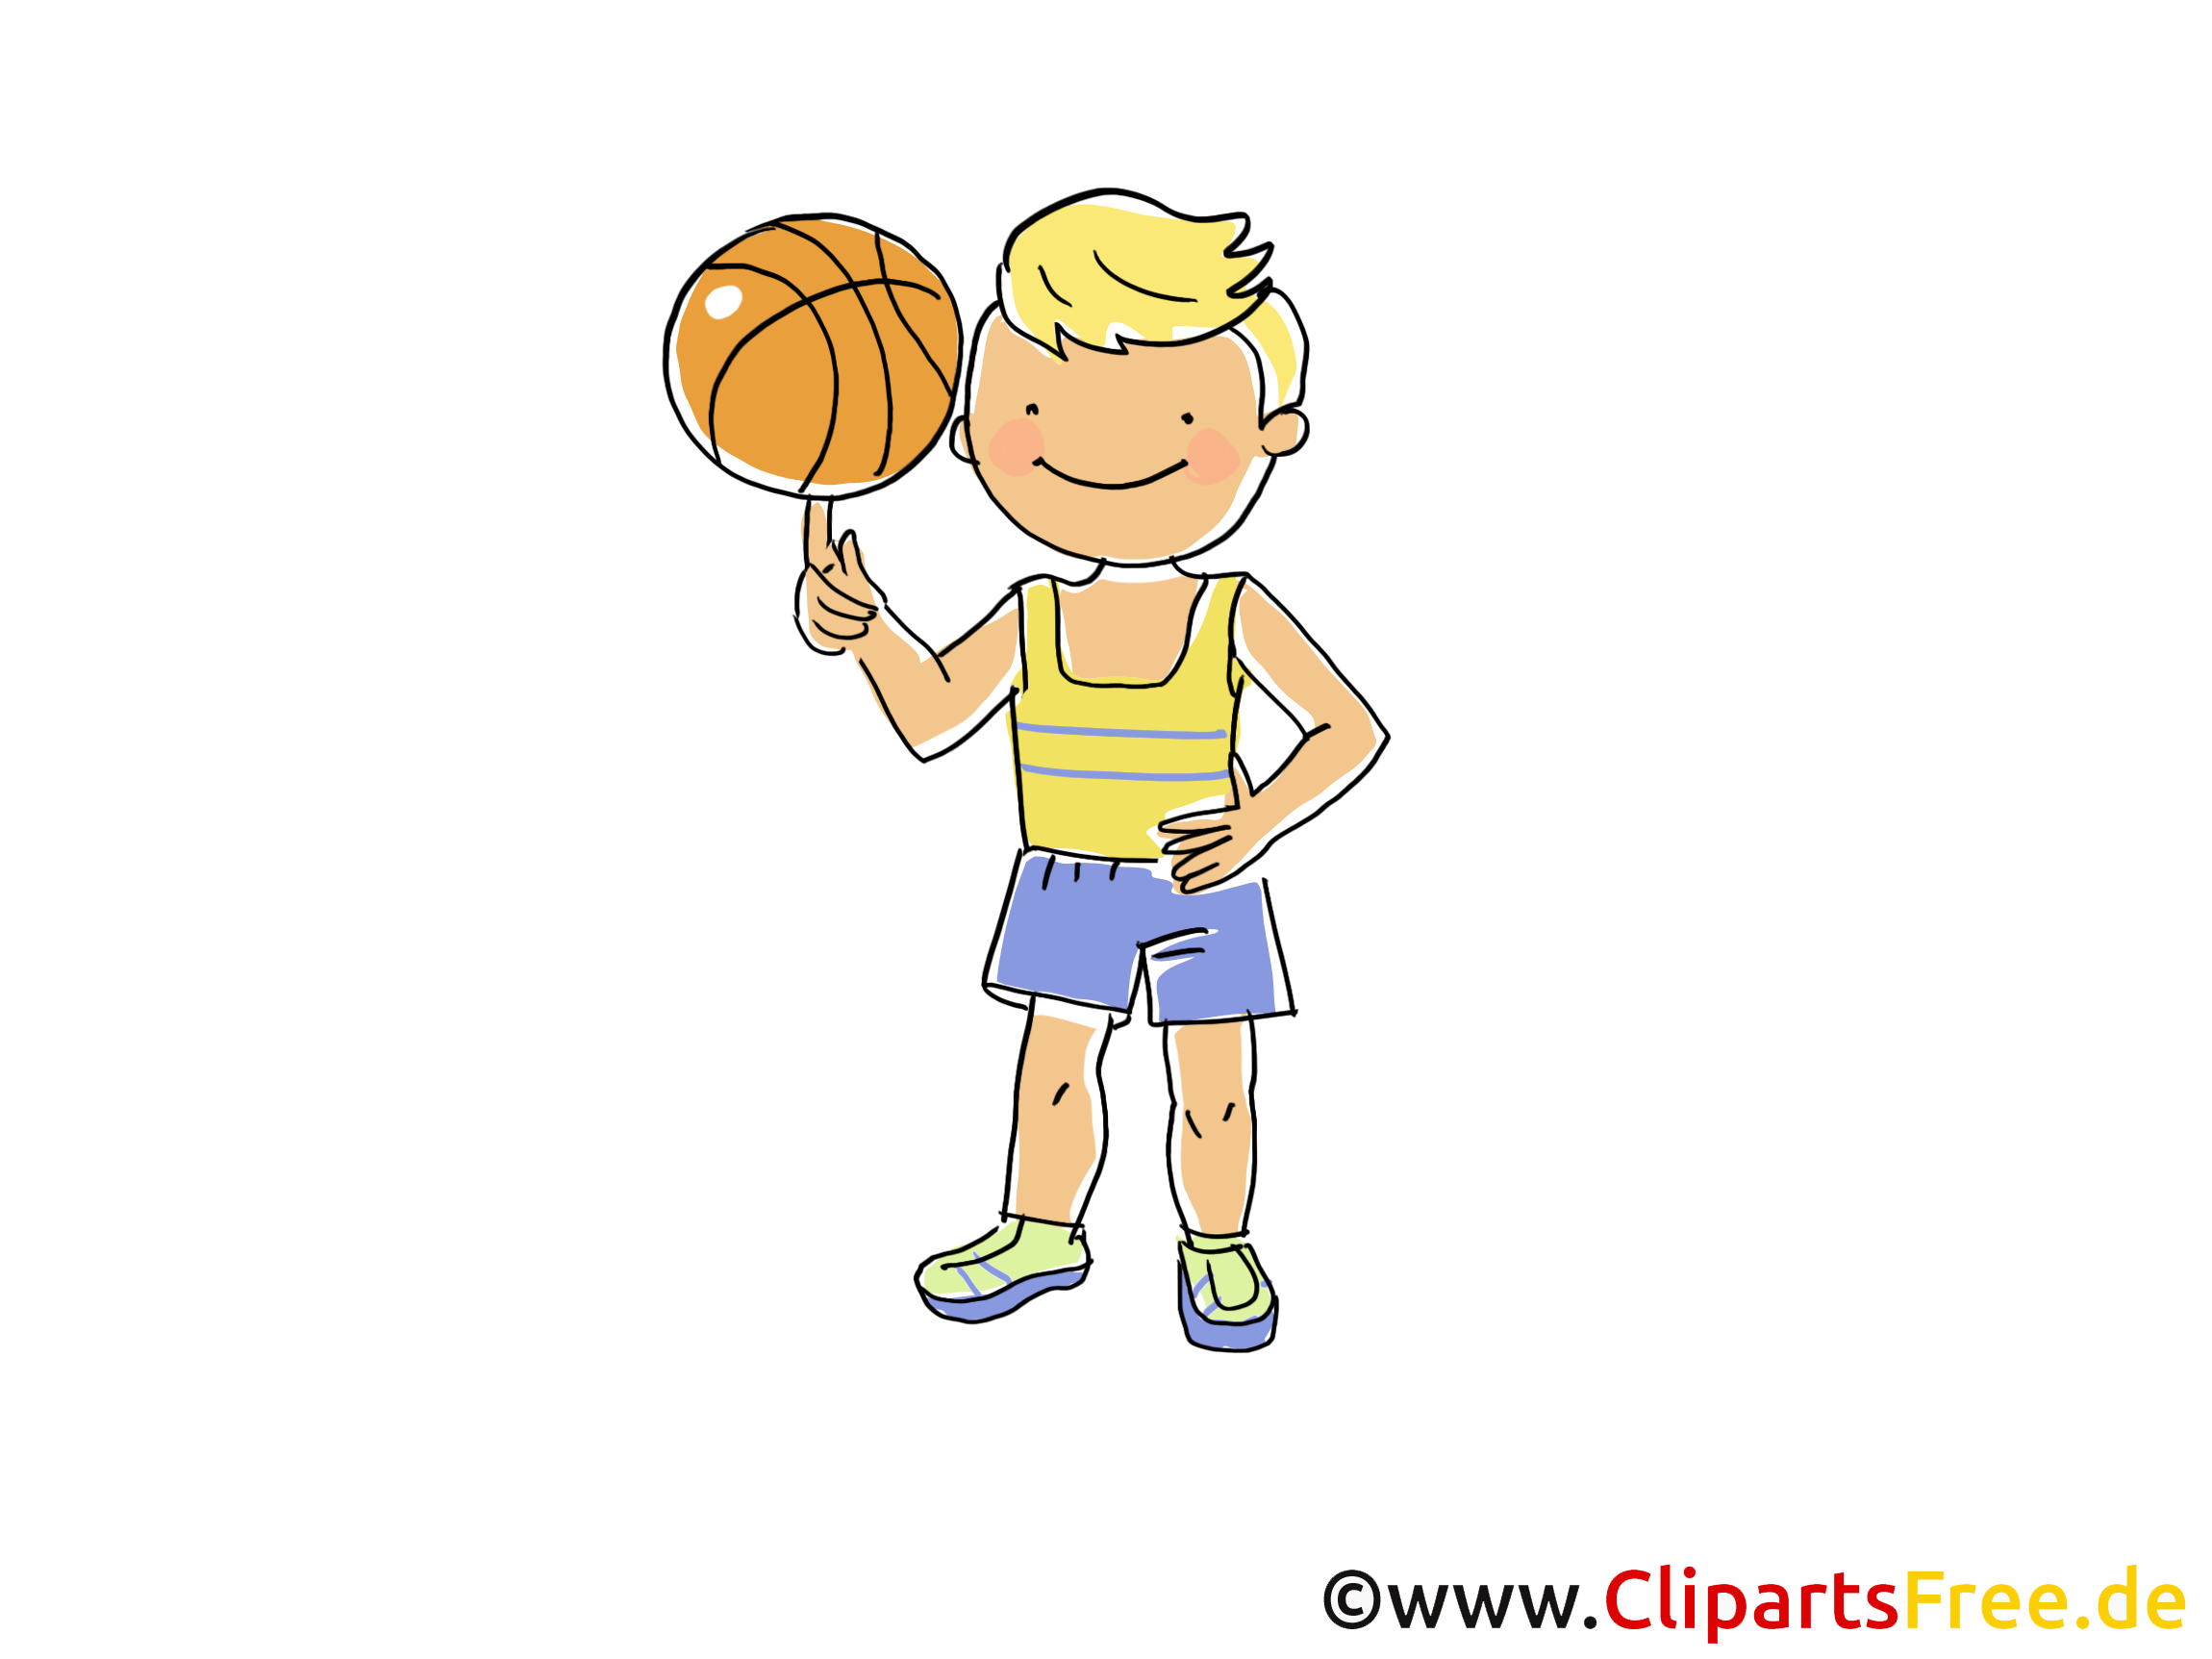 clipart sport und spiel - photo #16